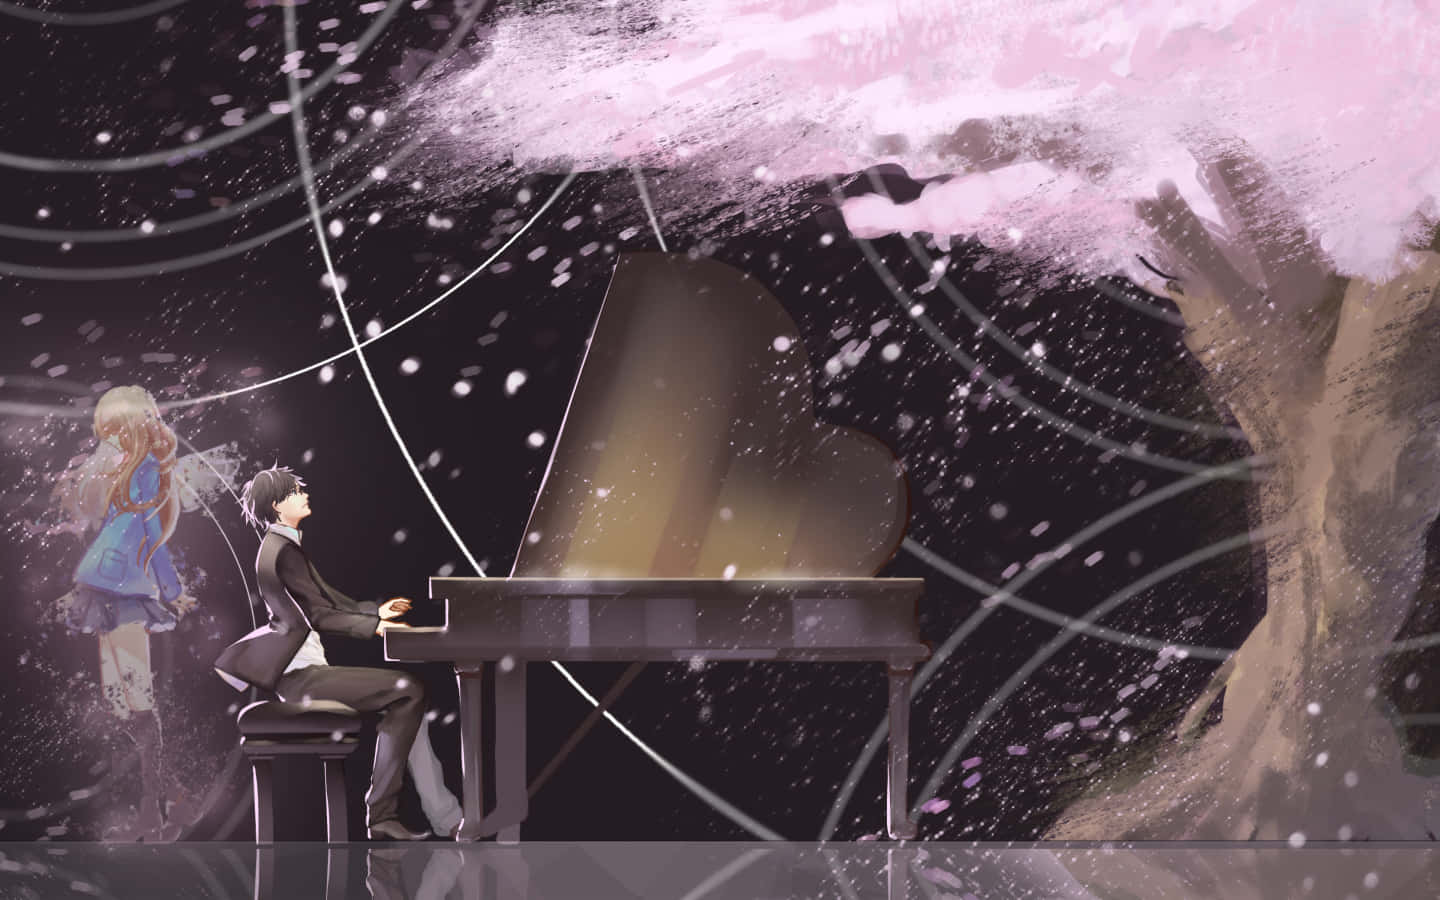 Tvåmusiker Som Spelar Piano I En Emotionell Stund Från Animeklassikern Your Lie In April.